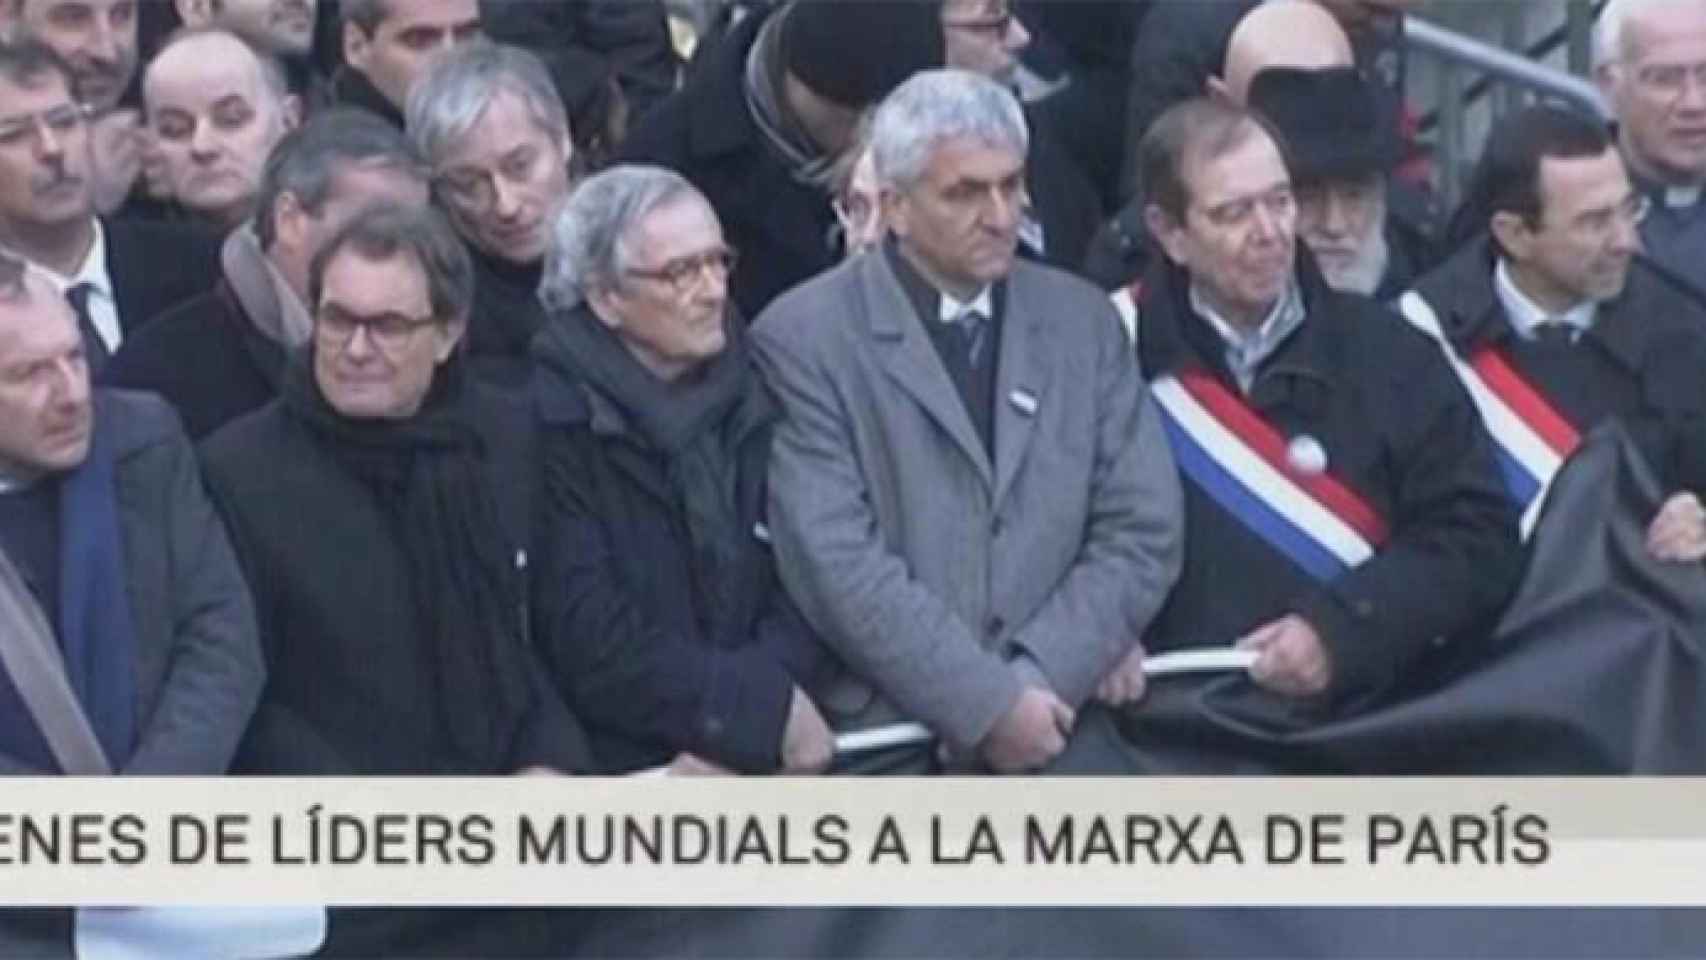 Críticas contra TV3 por considerar a Artur Mas líder mundial en la marcha de París